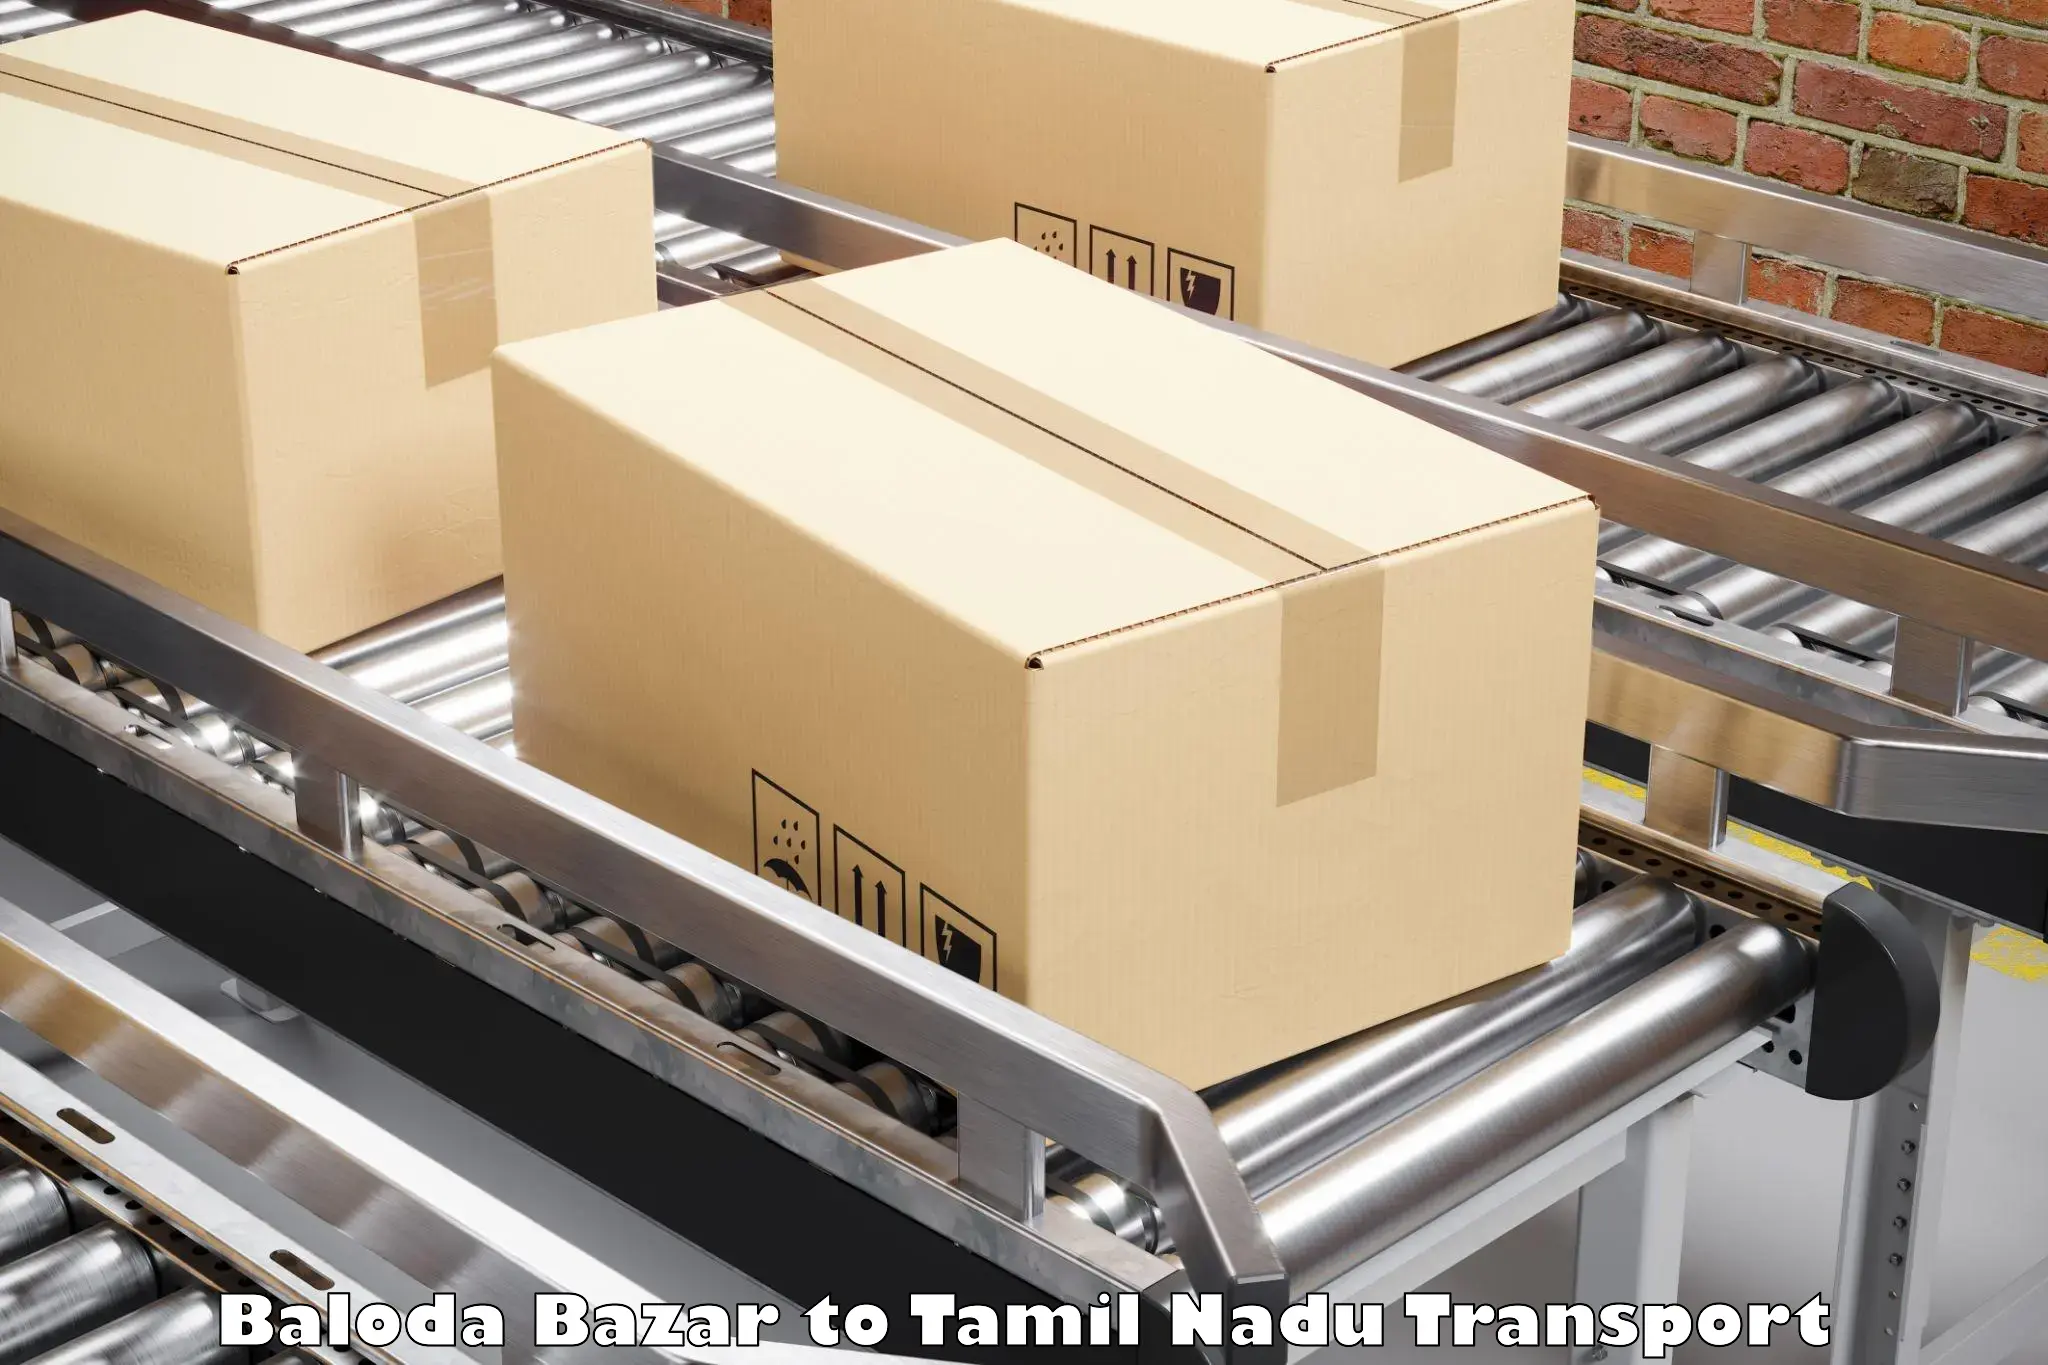 Intercity transport Baloda Bazar to Tamil Nadu